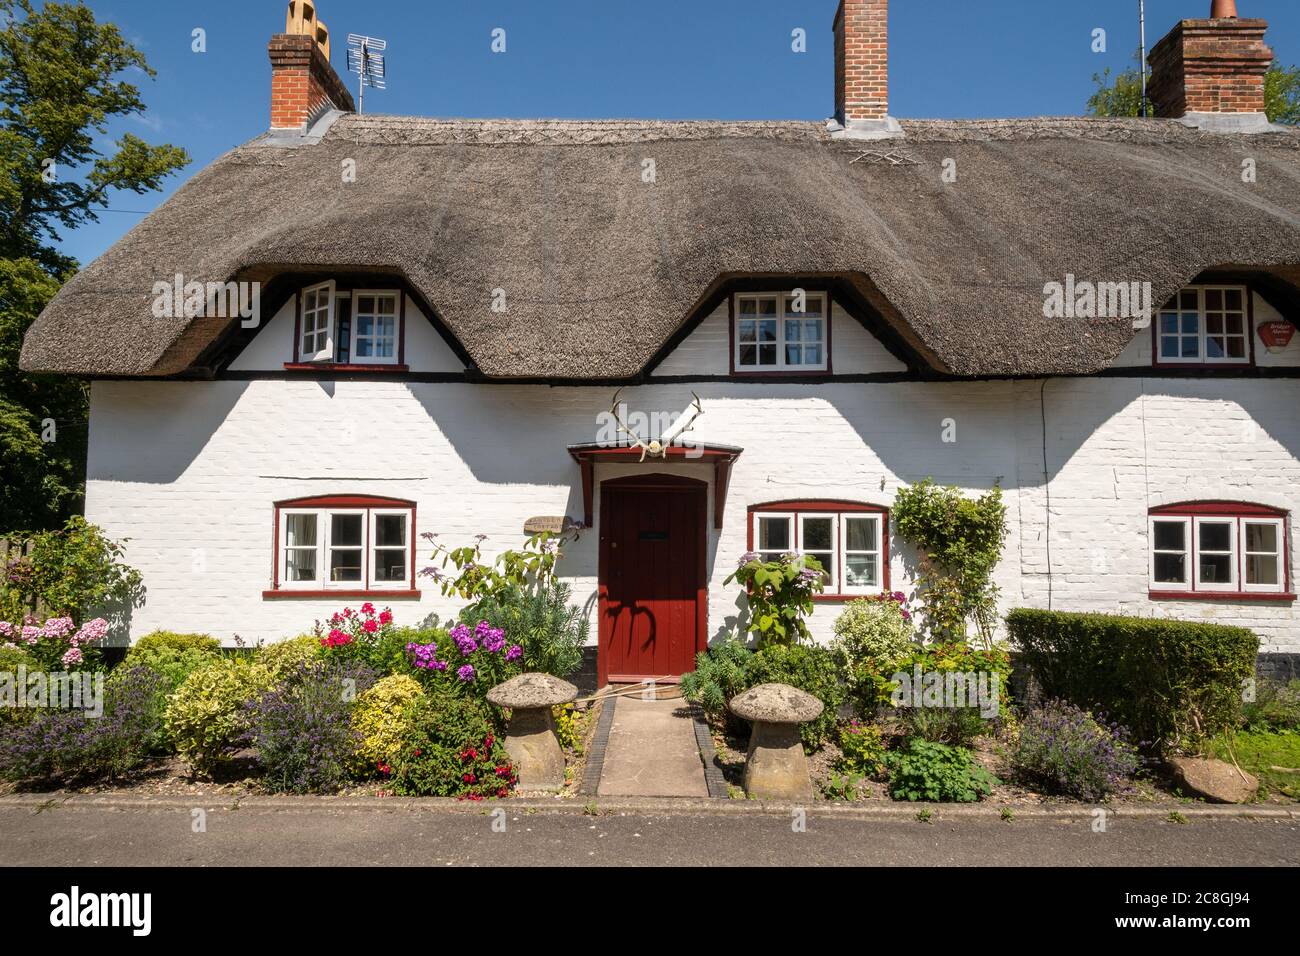 Ce cottage de chaume appelé Antlers Cottage avec des bois de cerf au-dessus de la porte, Wherwell, Hampshire, Royaume-Uni Banque D'Images